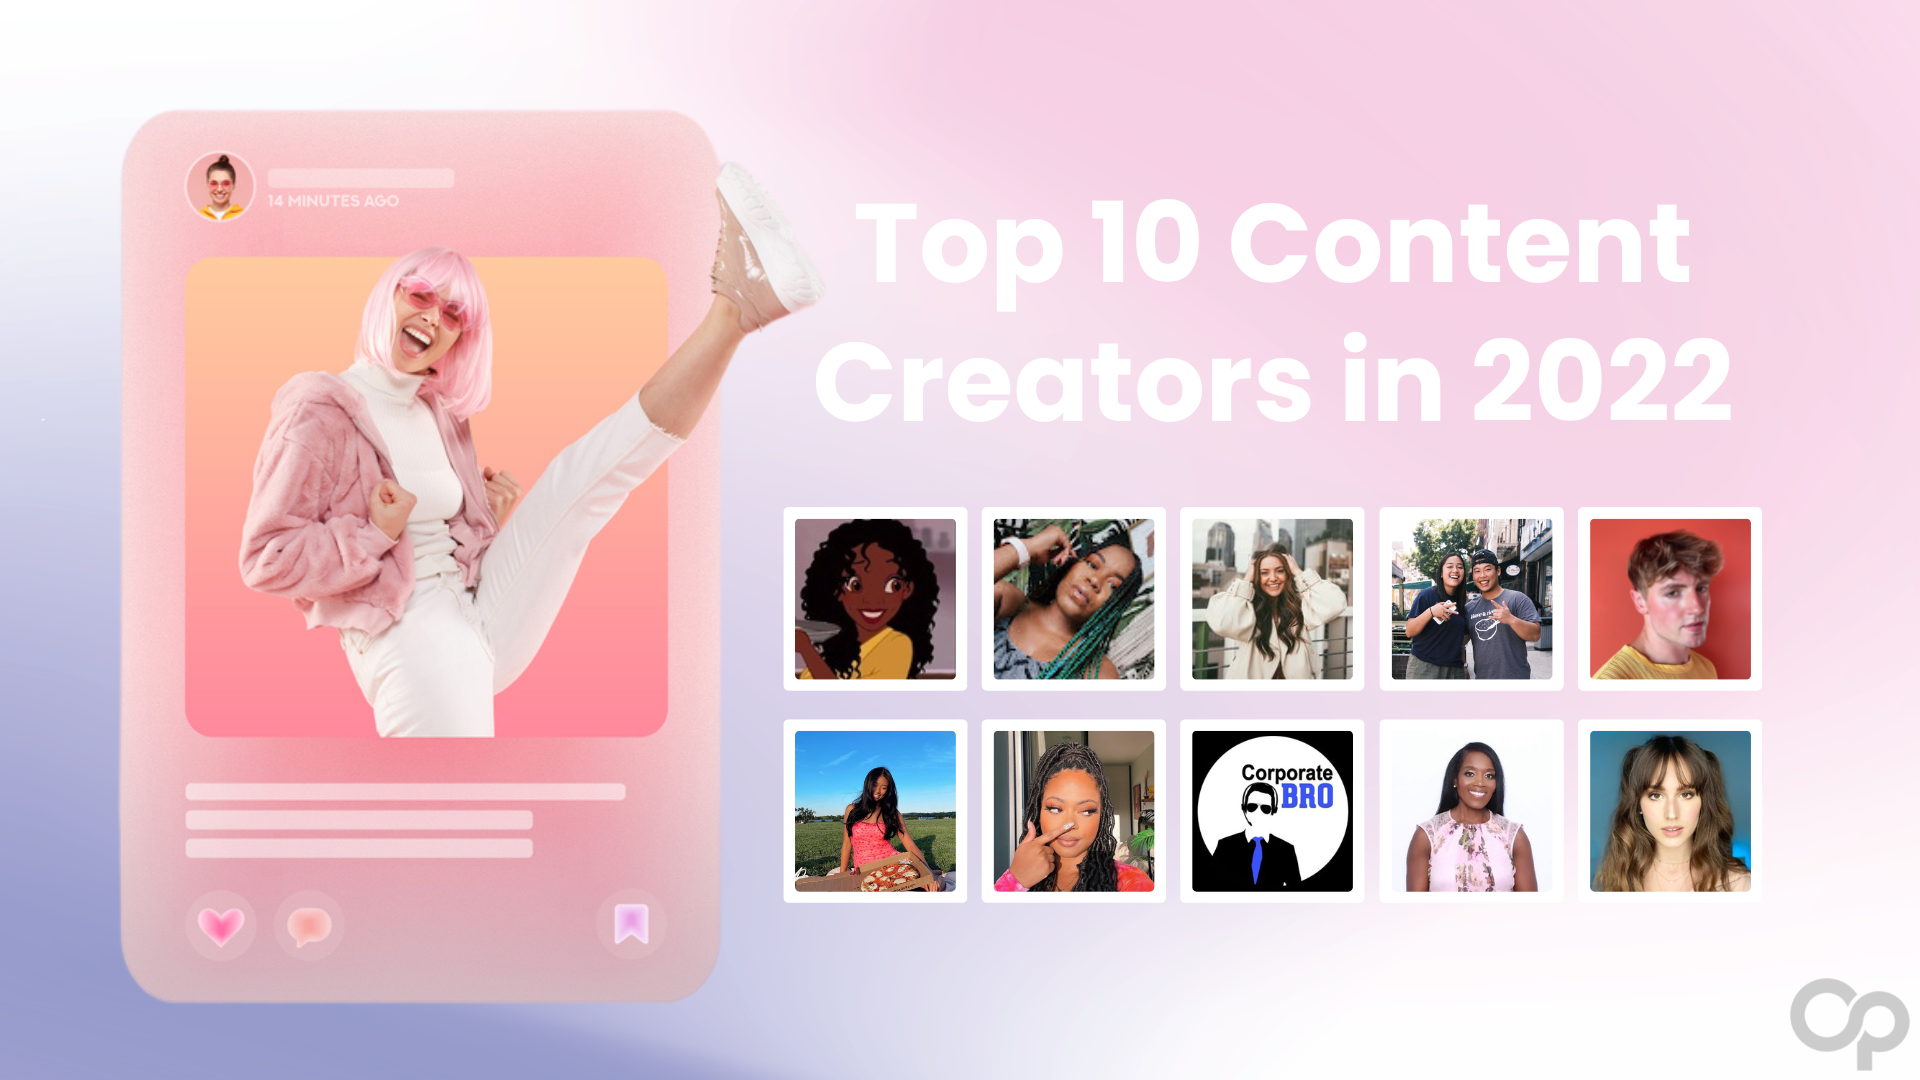 Top 10 Content Creators in 2022